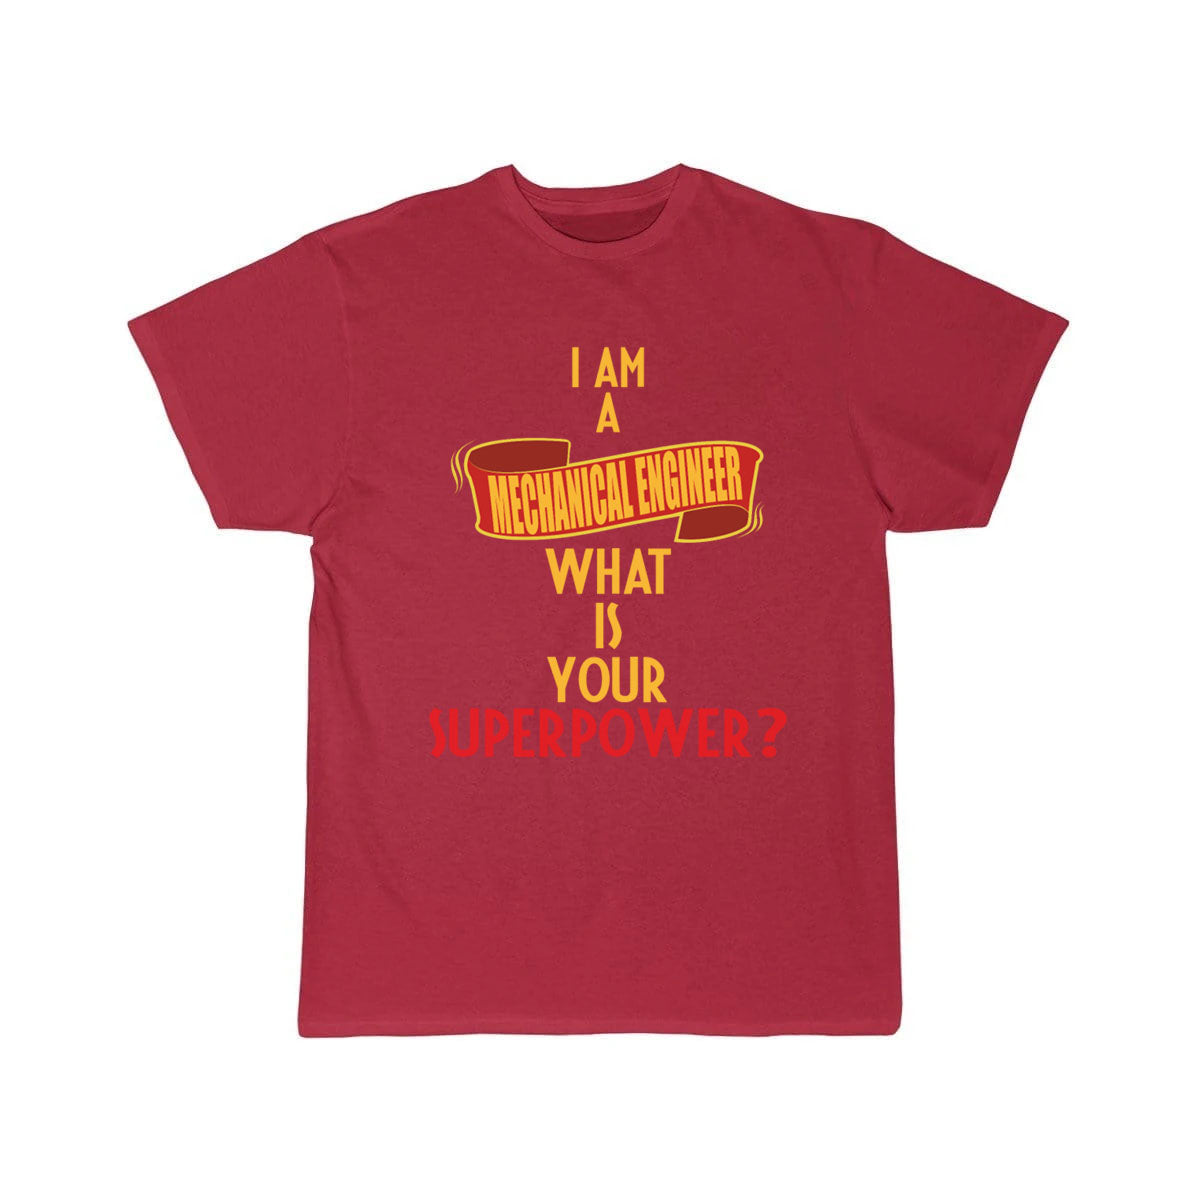 Mechanical Engineer - I am a Mechanical Engineer T-Shirt THE AV8R